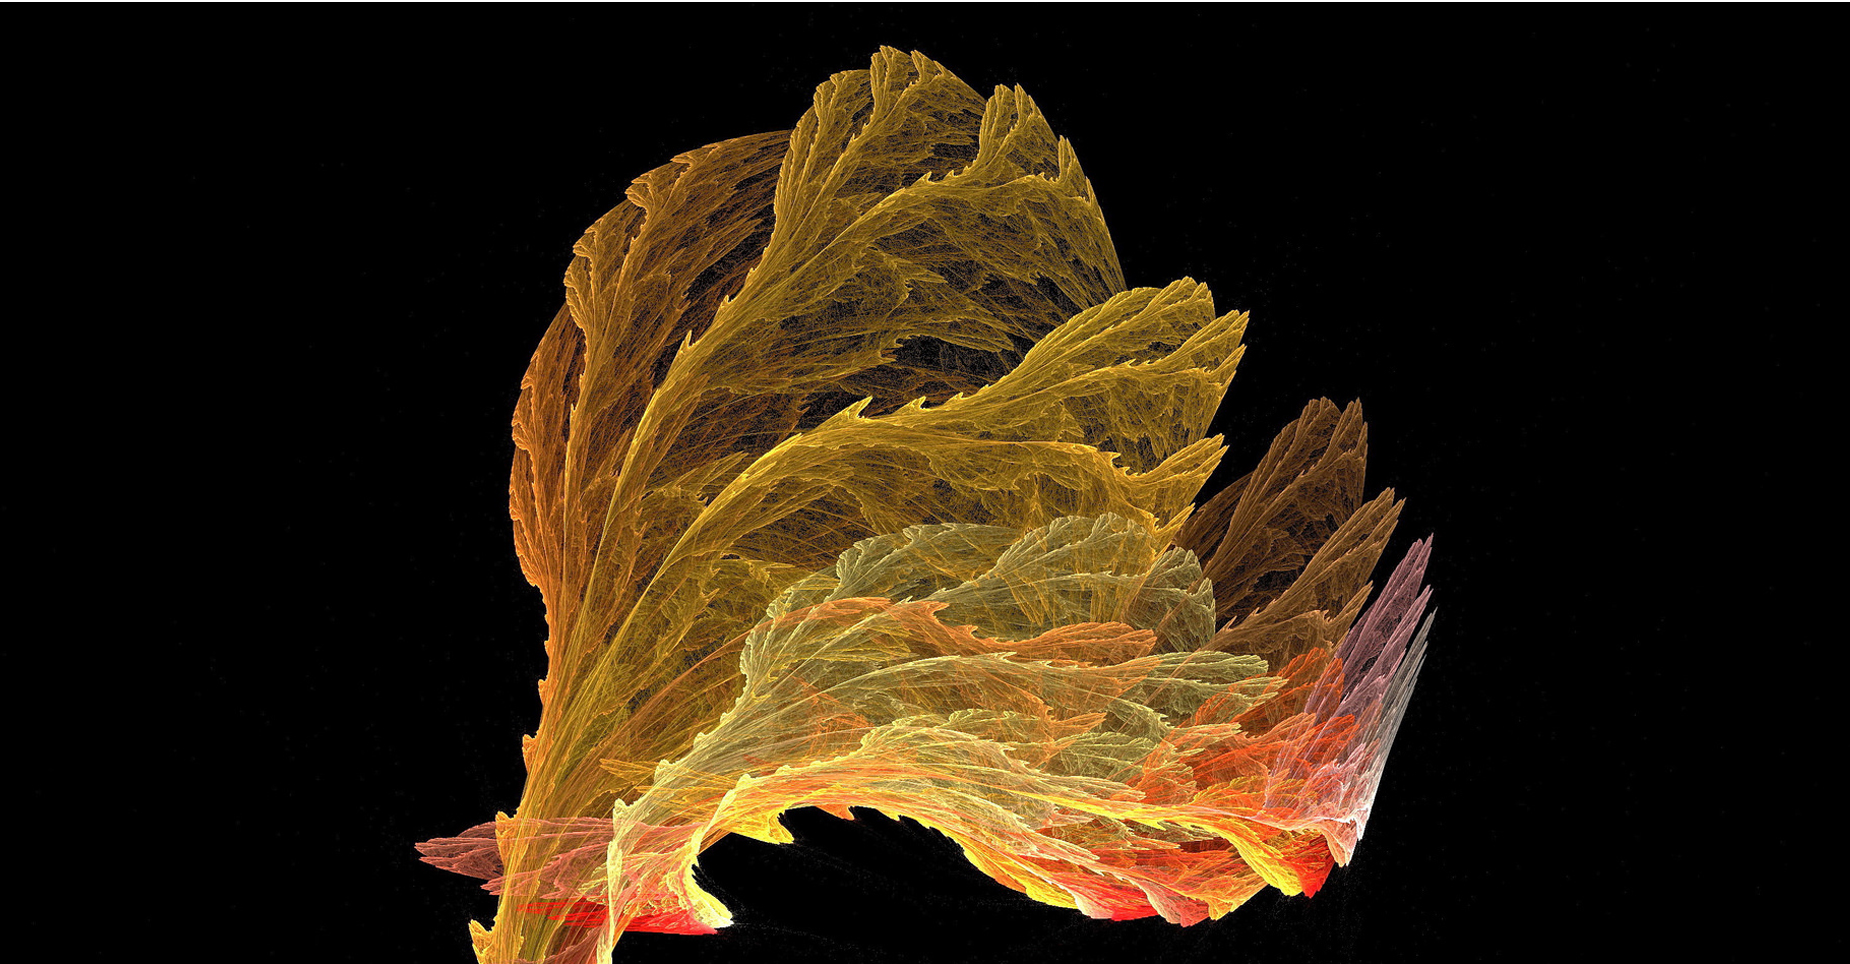 Comment imaginer les paysages engendrés par les fractales ? © Rodica Abaluta, CC by-nc 2.0